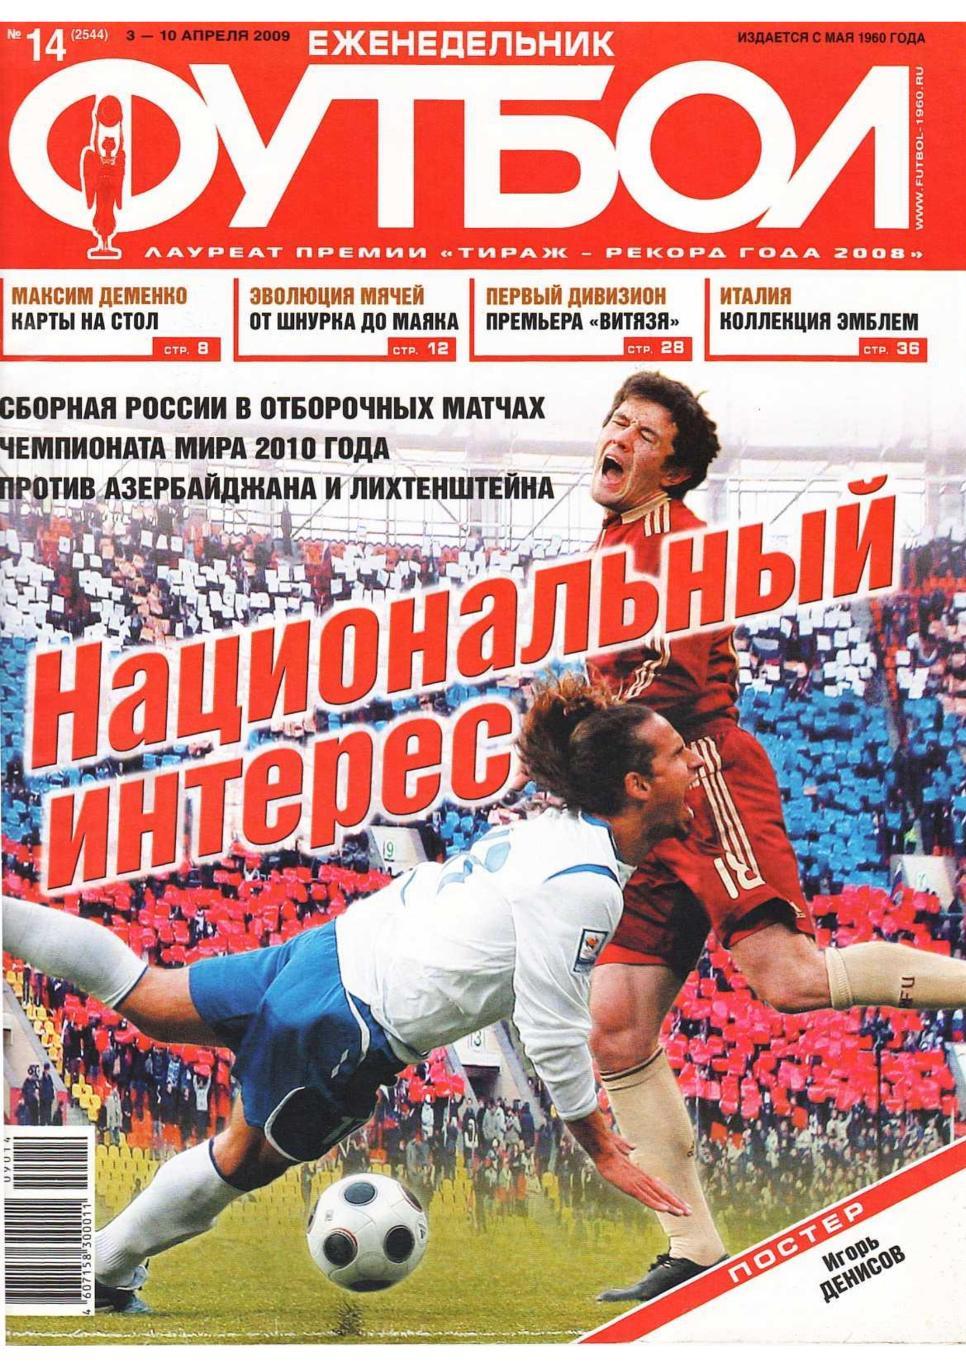 Еженедельник «Футбол». № 14. 3 – 10 апреля 2009.